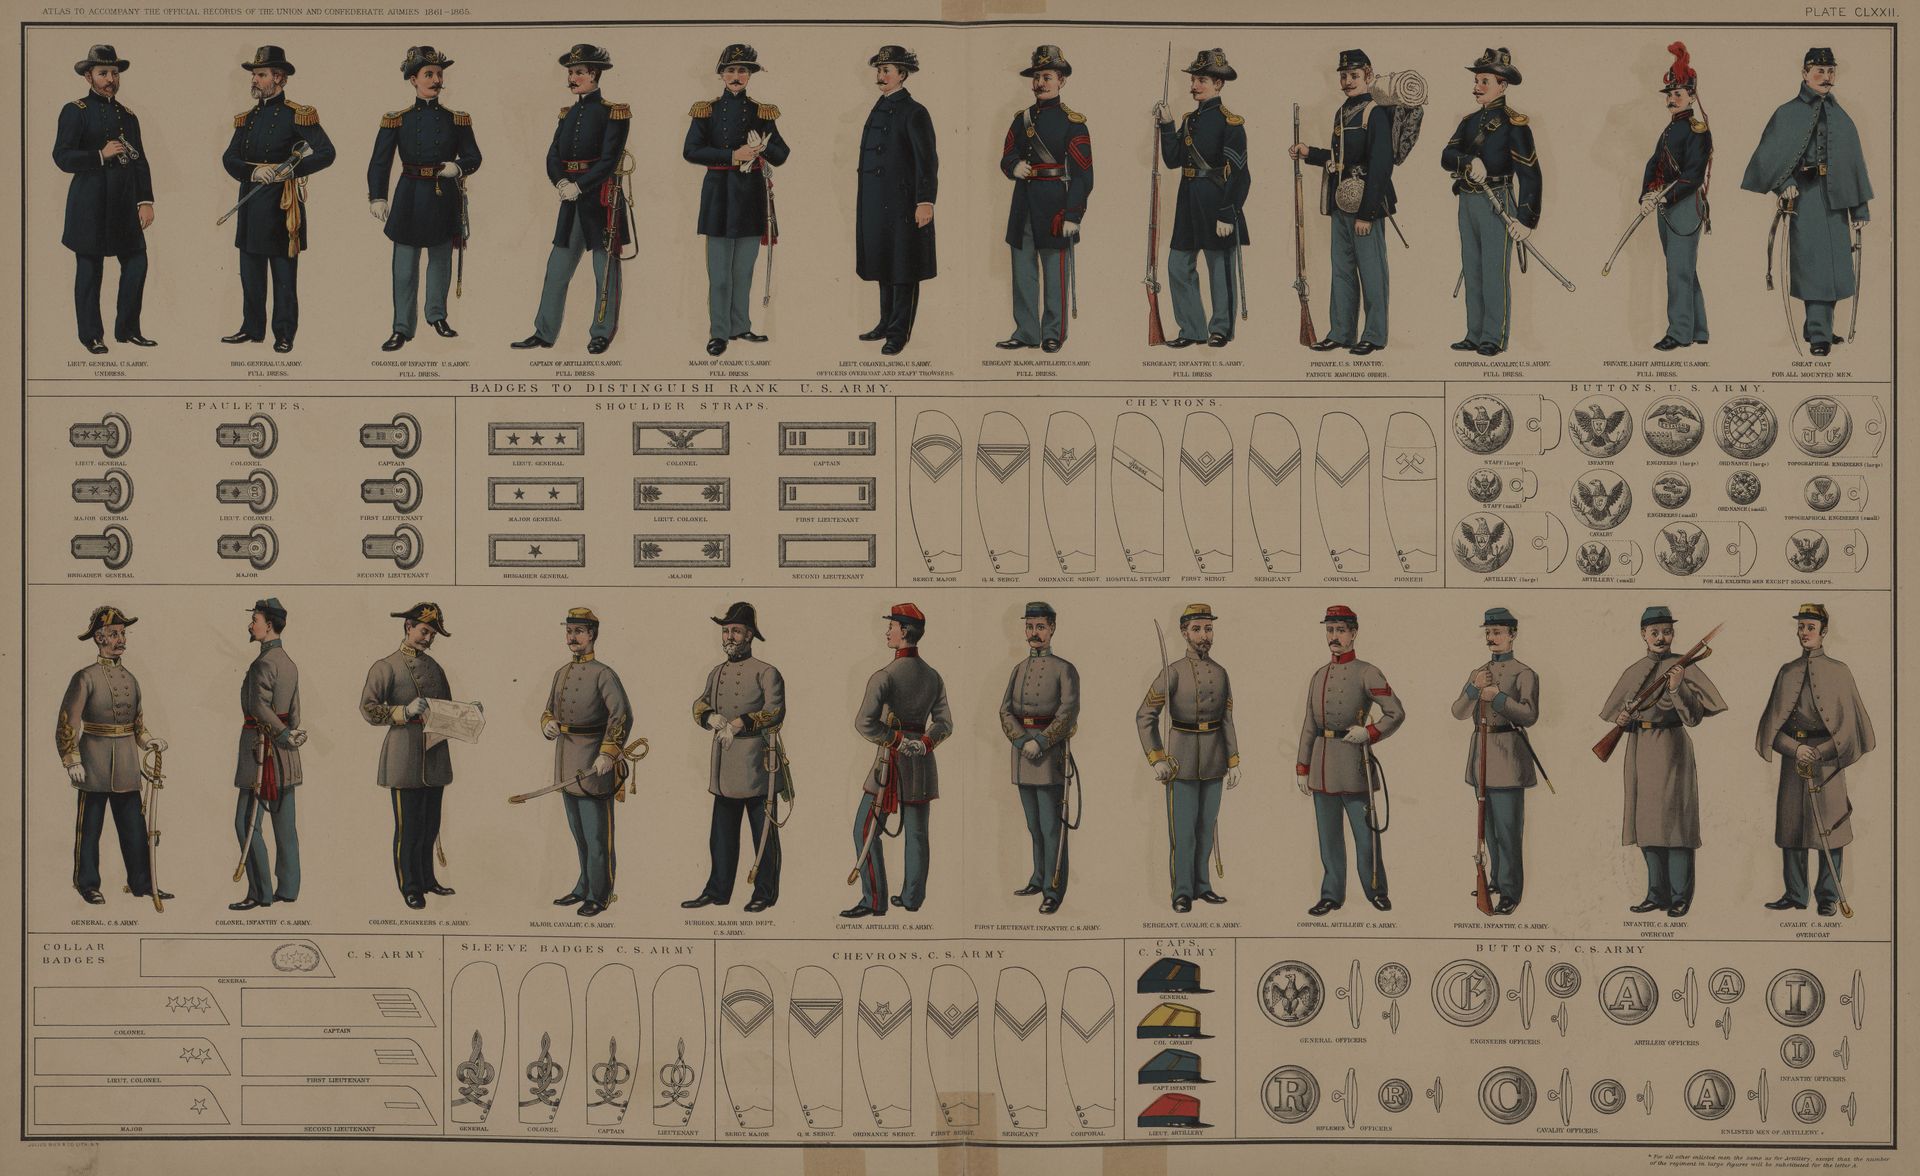 Ultimate General: Civil War — гайд по родам войск и их структуре